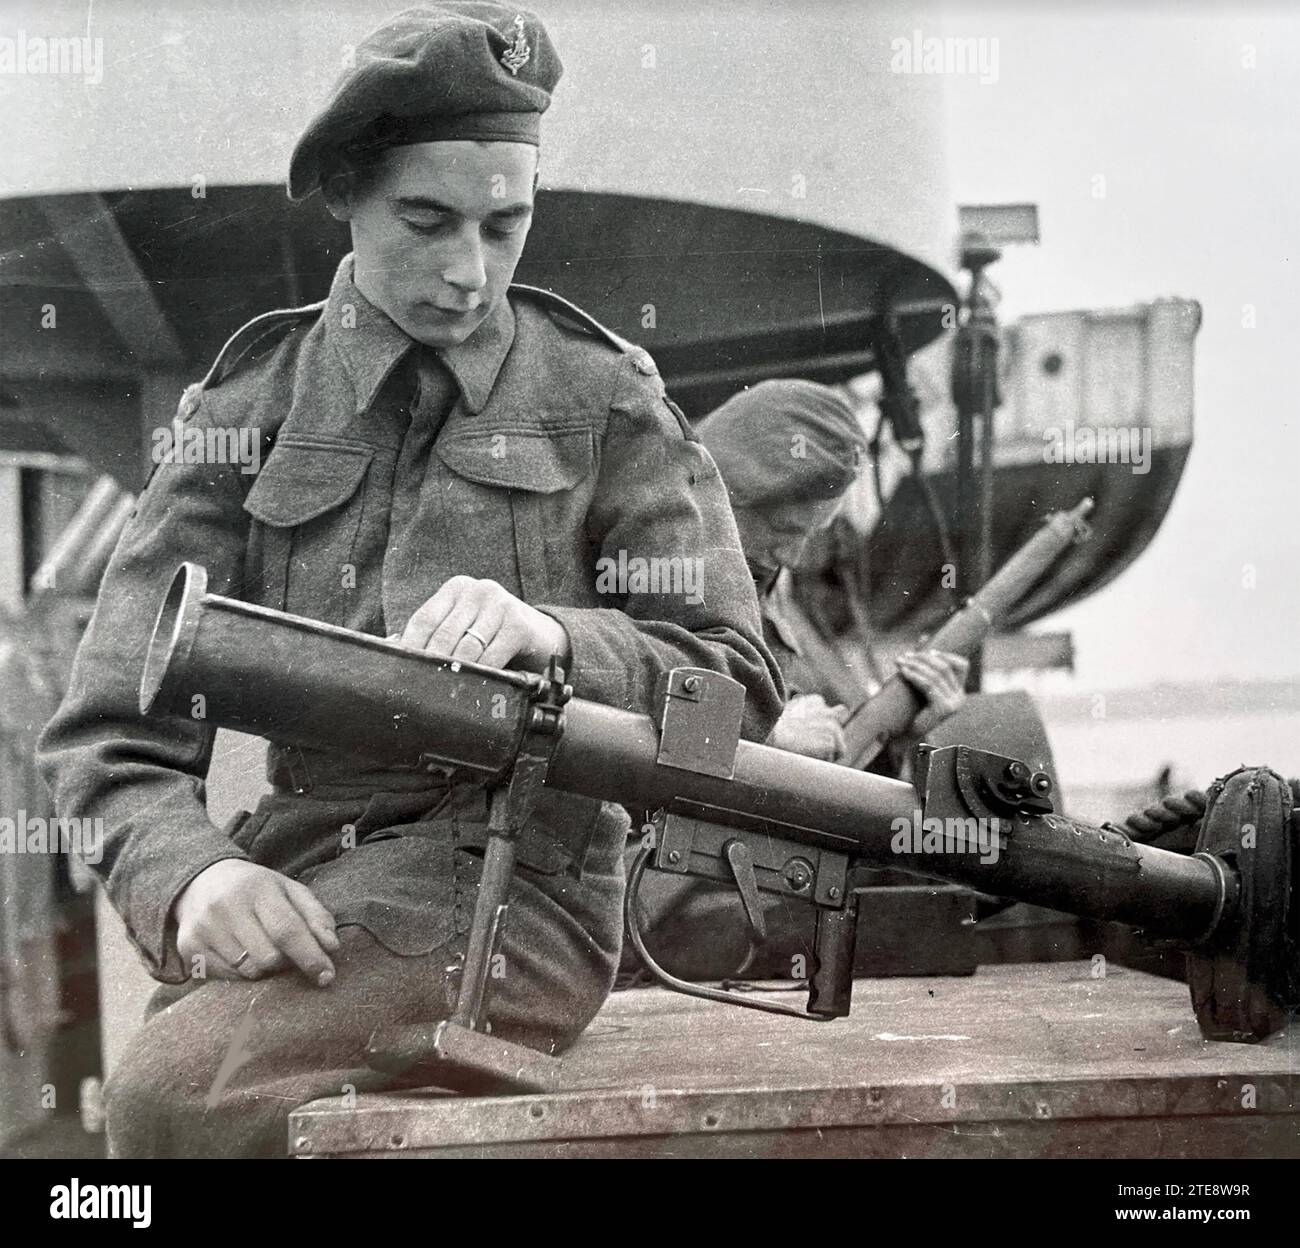 PIAT Projector Infantry arme anti Tank avec un soldat britannique vers 1943 Banque D'Images